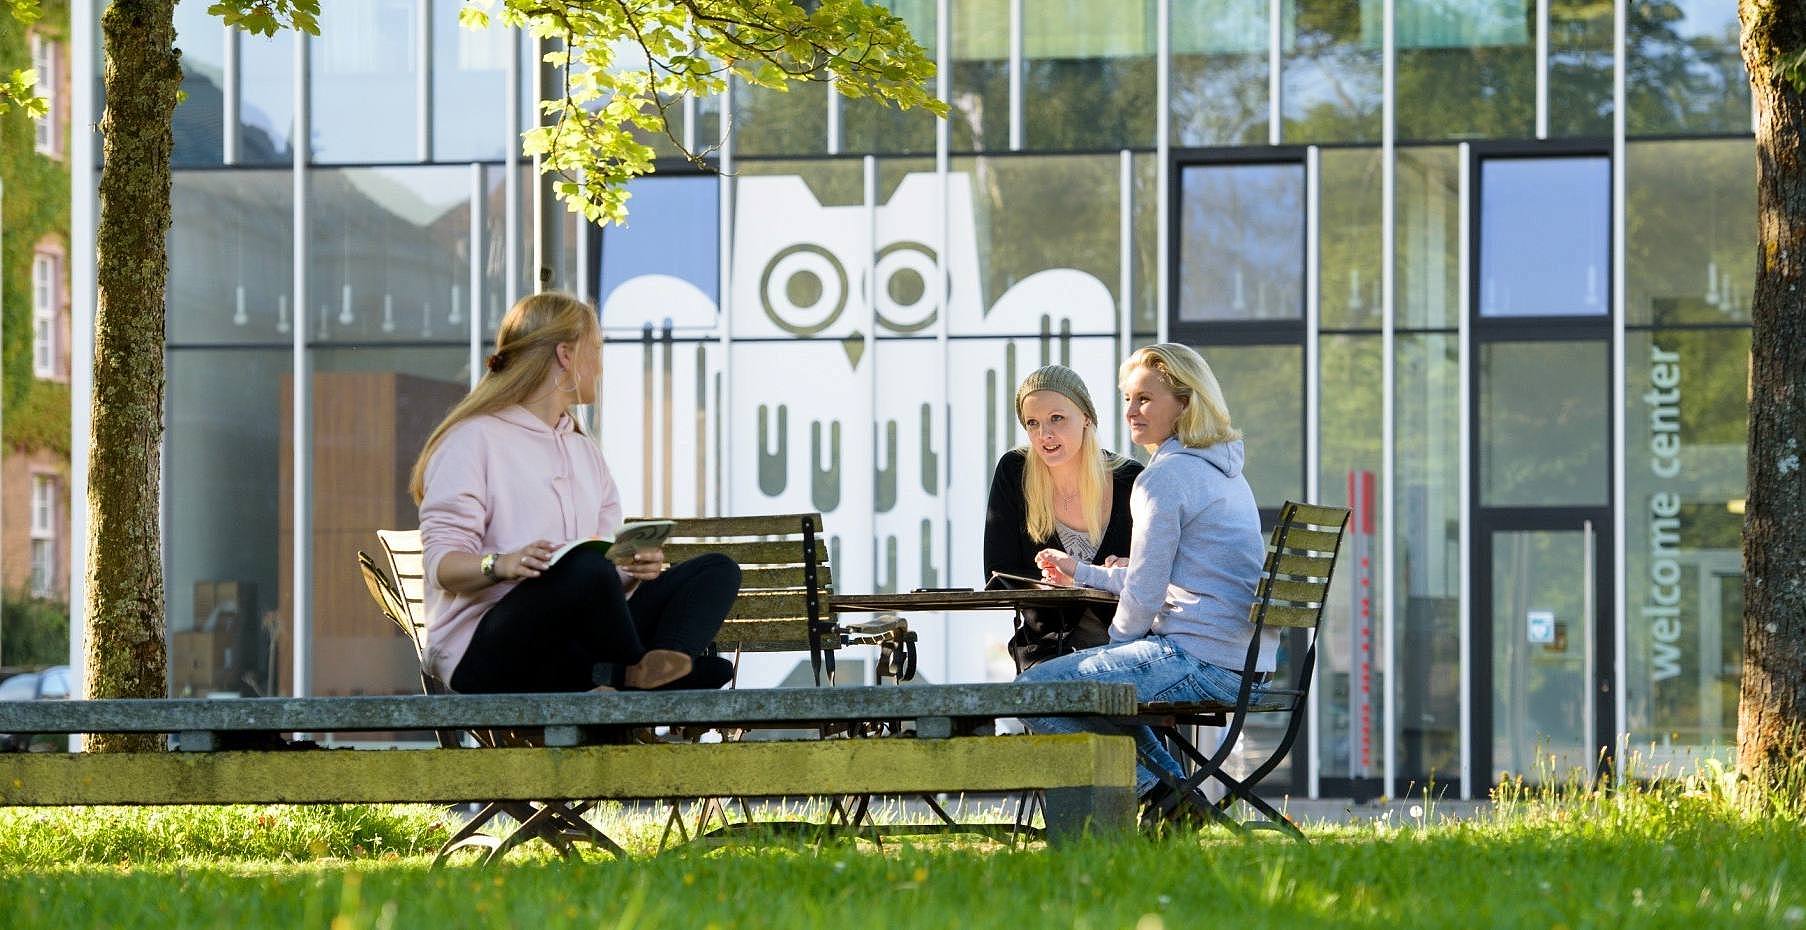 Drei Studentinnen sitzen am Tisch vor einem Glasbau mit großer Campuseule auf den Fenstern